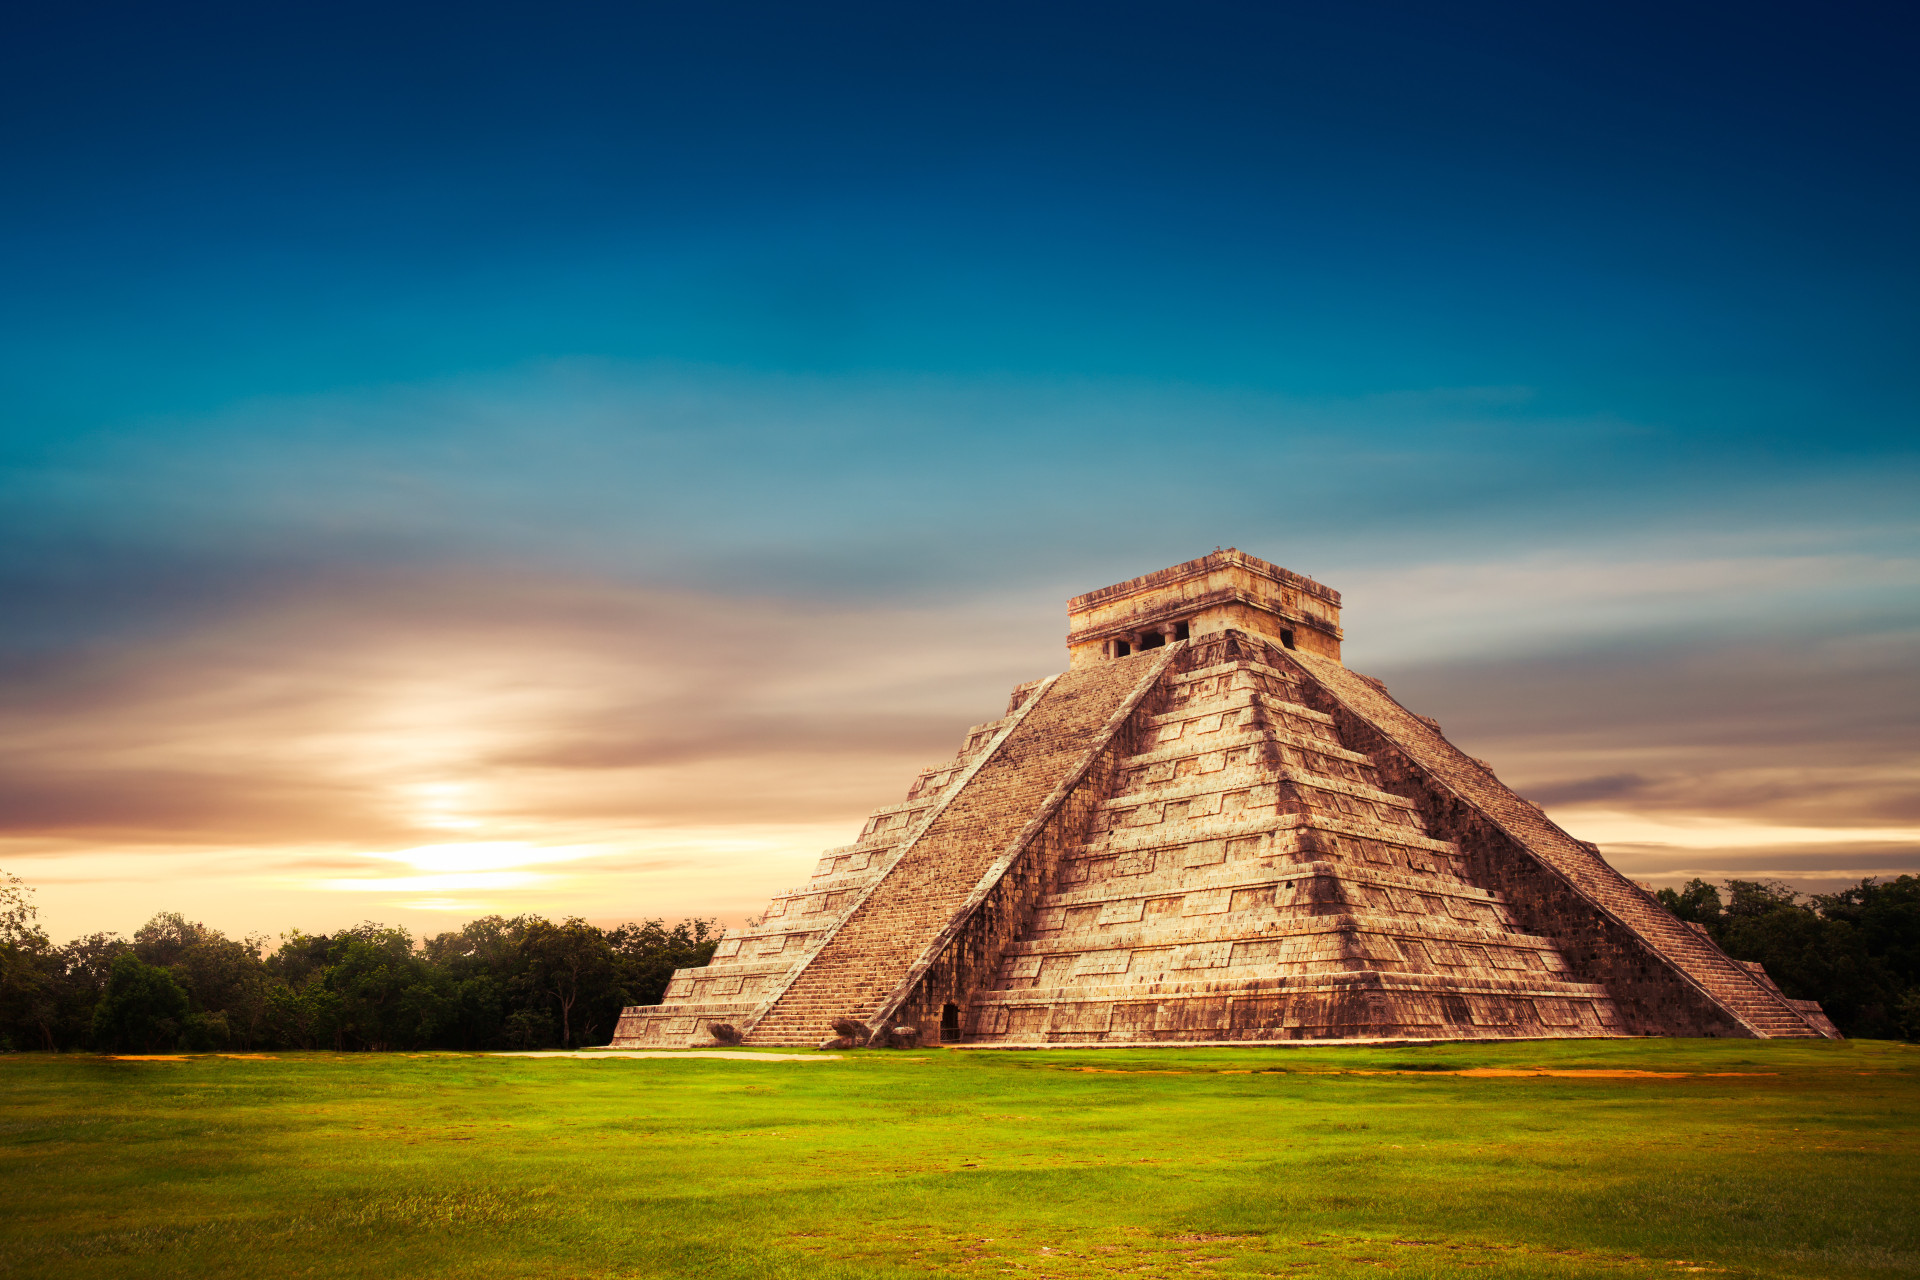 <p>Vous connaissez peut-être les civilisations aztèque ou maya, qui ont vécu en Amérique à l'époque précolombienne.</p><p><a href="https://www.msn.com/fr-fr/community/channel/vid-7xx8mnucu55yw63we9va2gwr7uihbxwc68fxqp25x6tg4ftibpra?cvid=94631541bc0f4f89bfd59158d696ad7e">Suivez-nous et accédez tous les jours à du contenu exclusif</a></p>